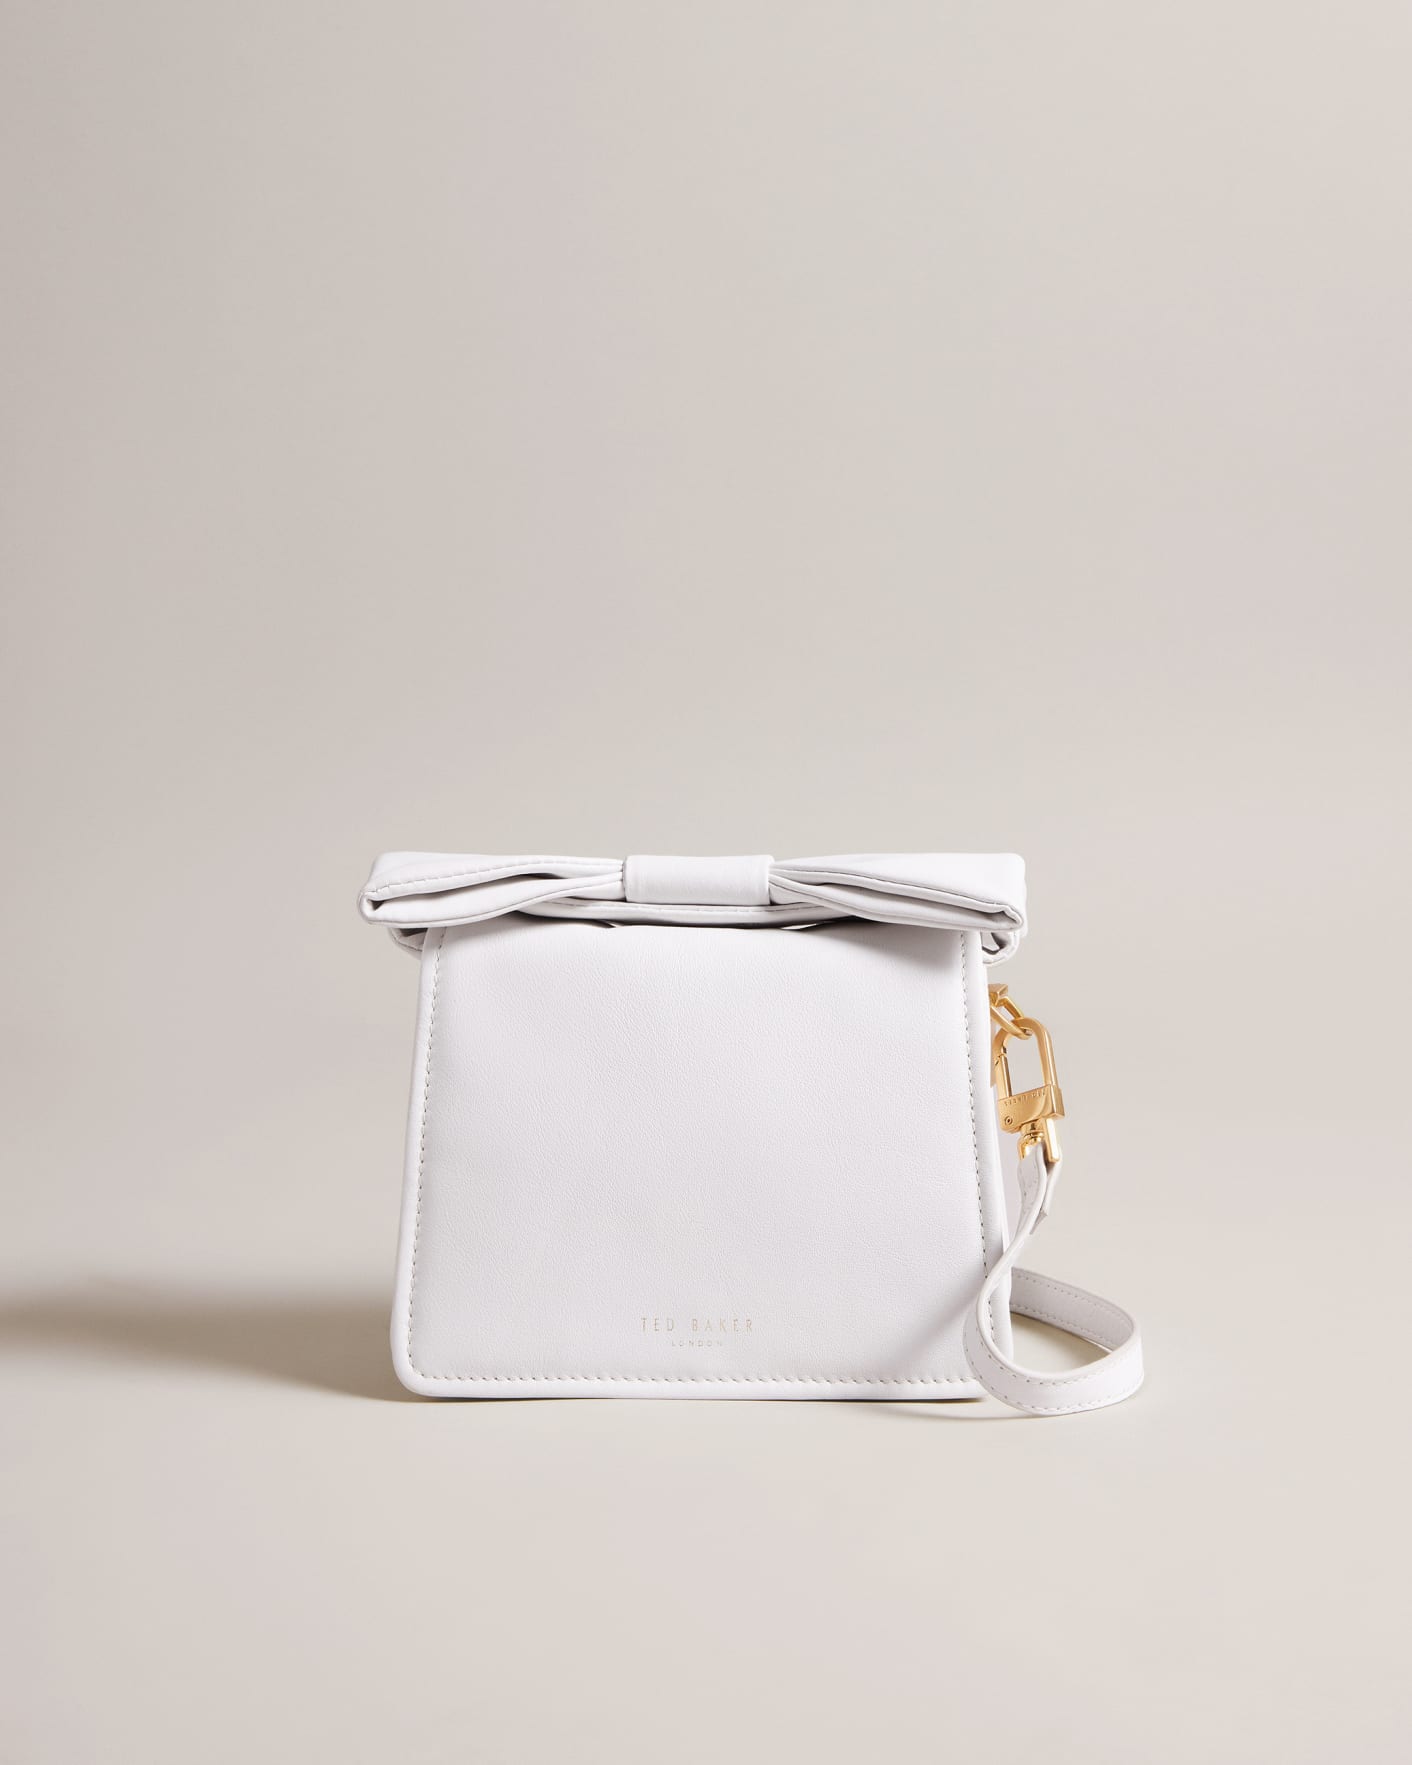 Niasina Mini Cross Body Bag in White